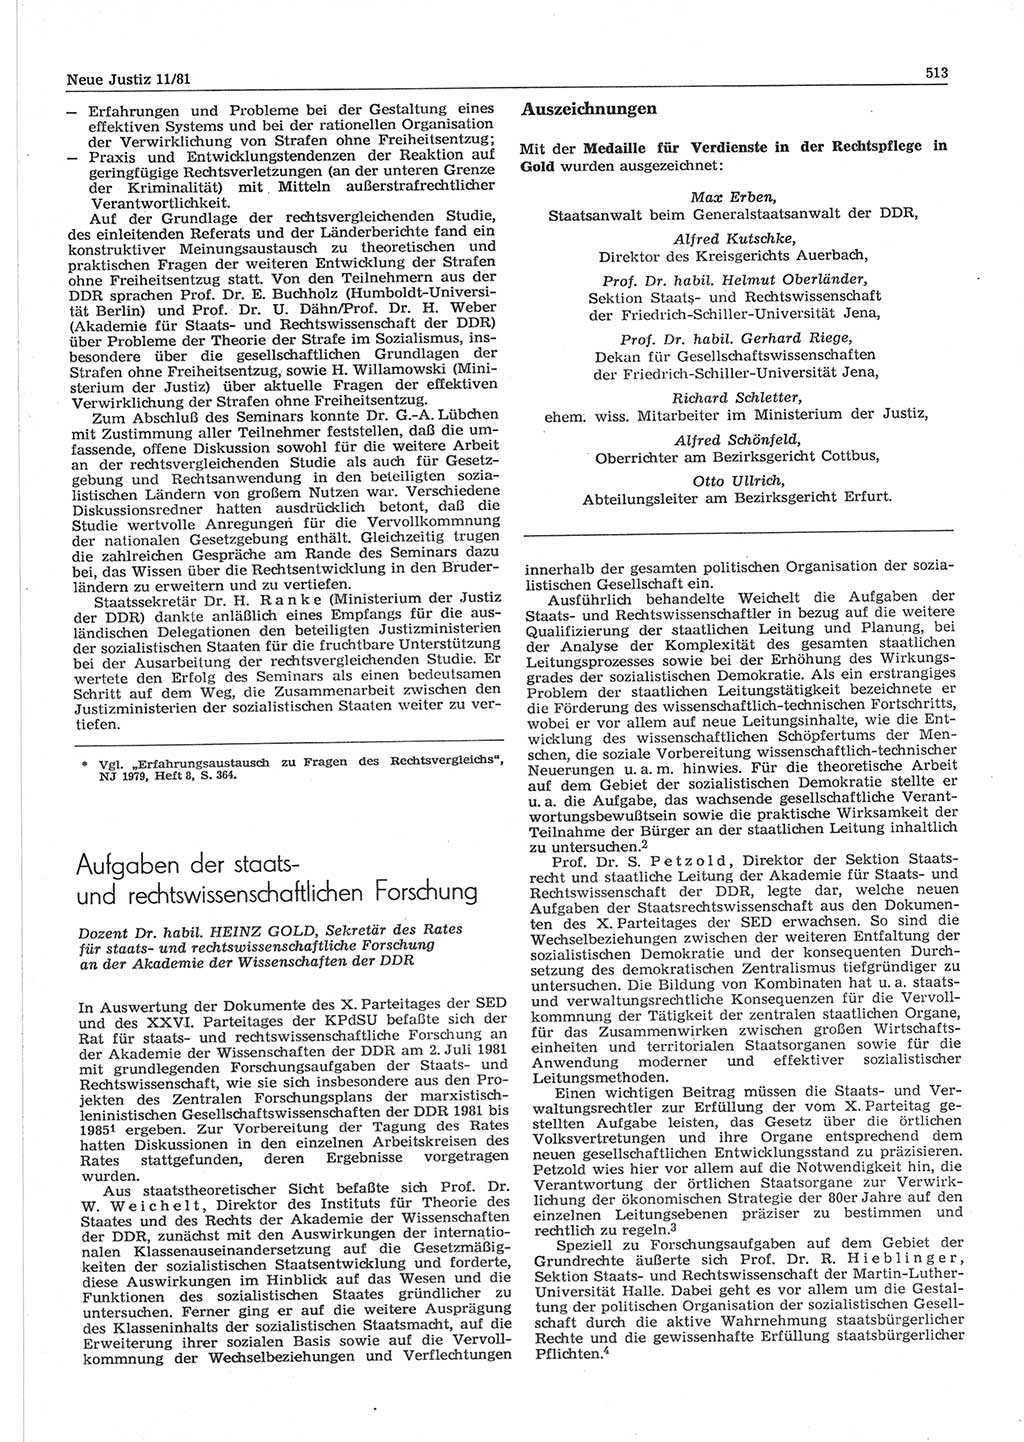 Neue Justiz (NJ), Zeitschrift für sozialistisches Recht und Gesetzlichkeit [Deutsche Demokratische Republik (DDR)], 35. Jahrgang 1981, Seite 513 (NJ DDR 1981, S. 513)